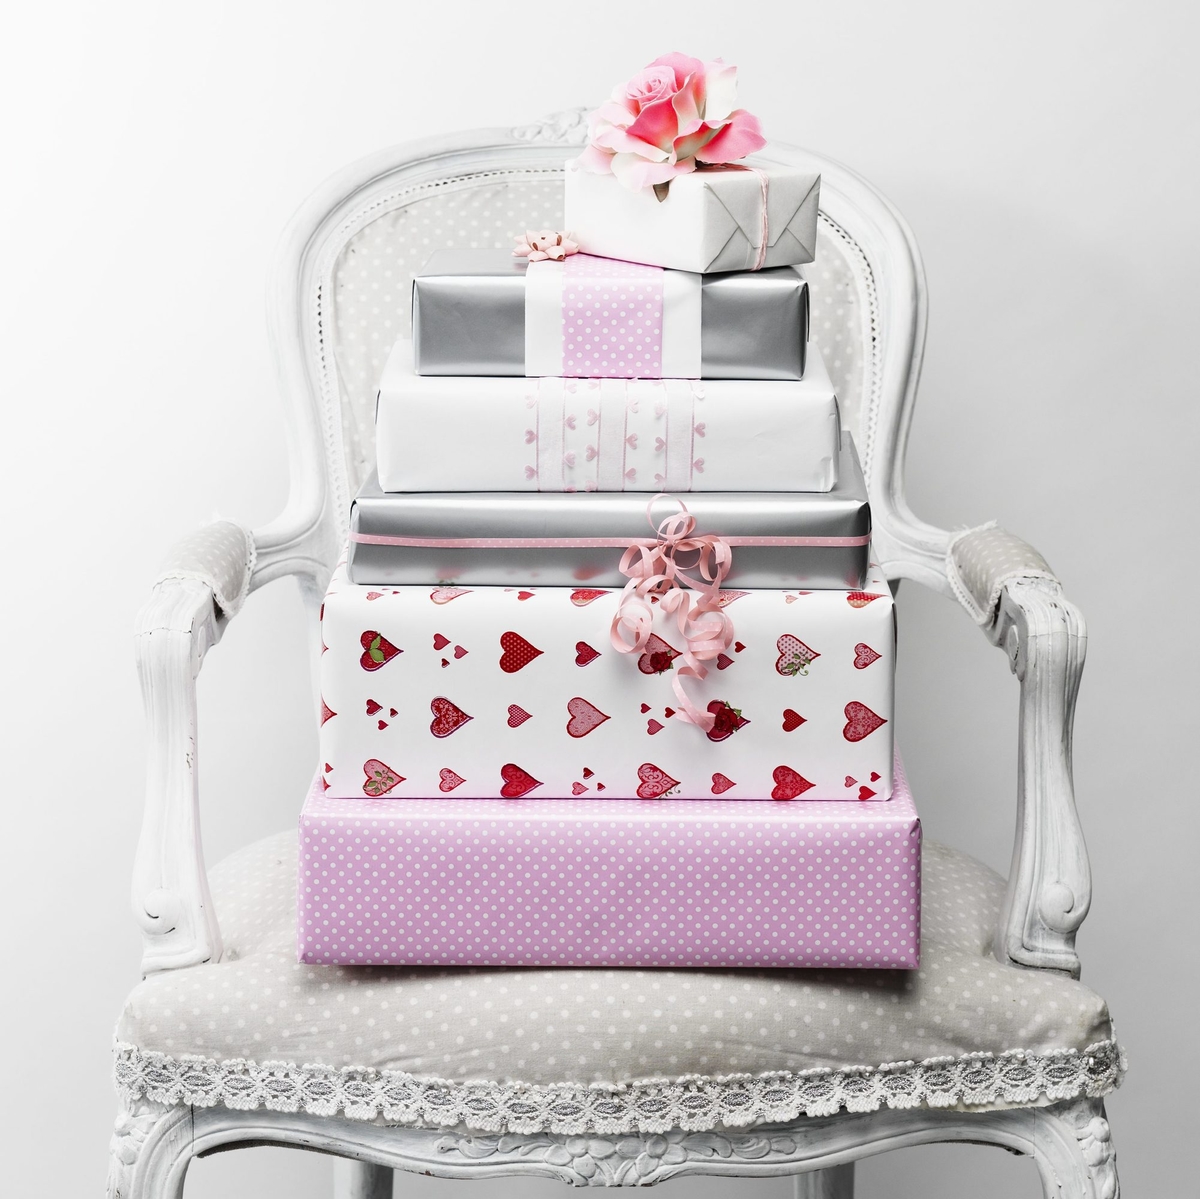 Paket i silver och rosa